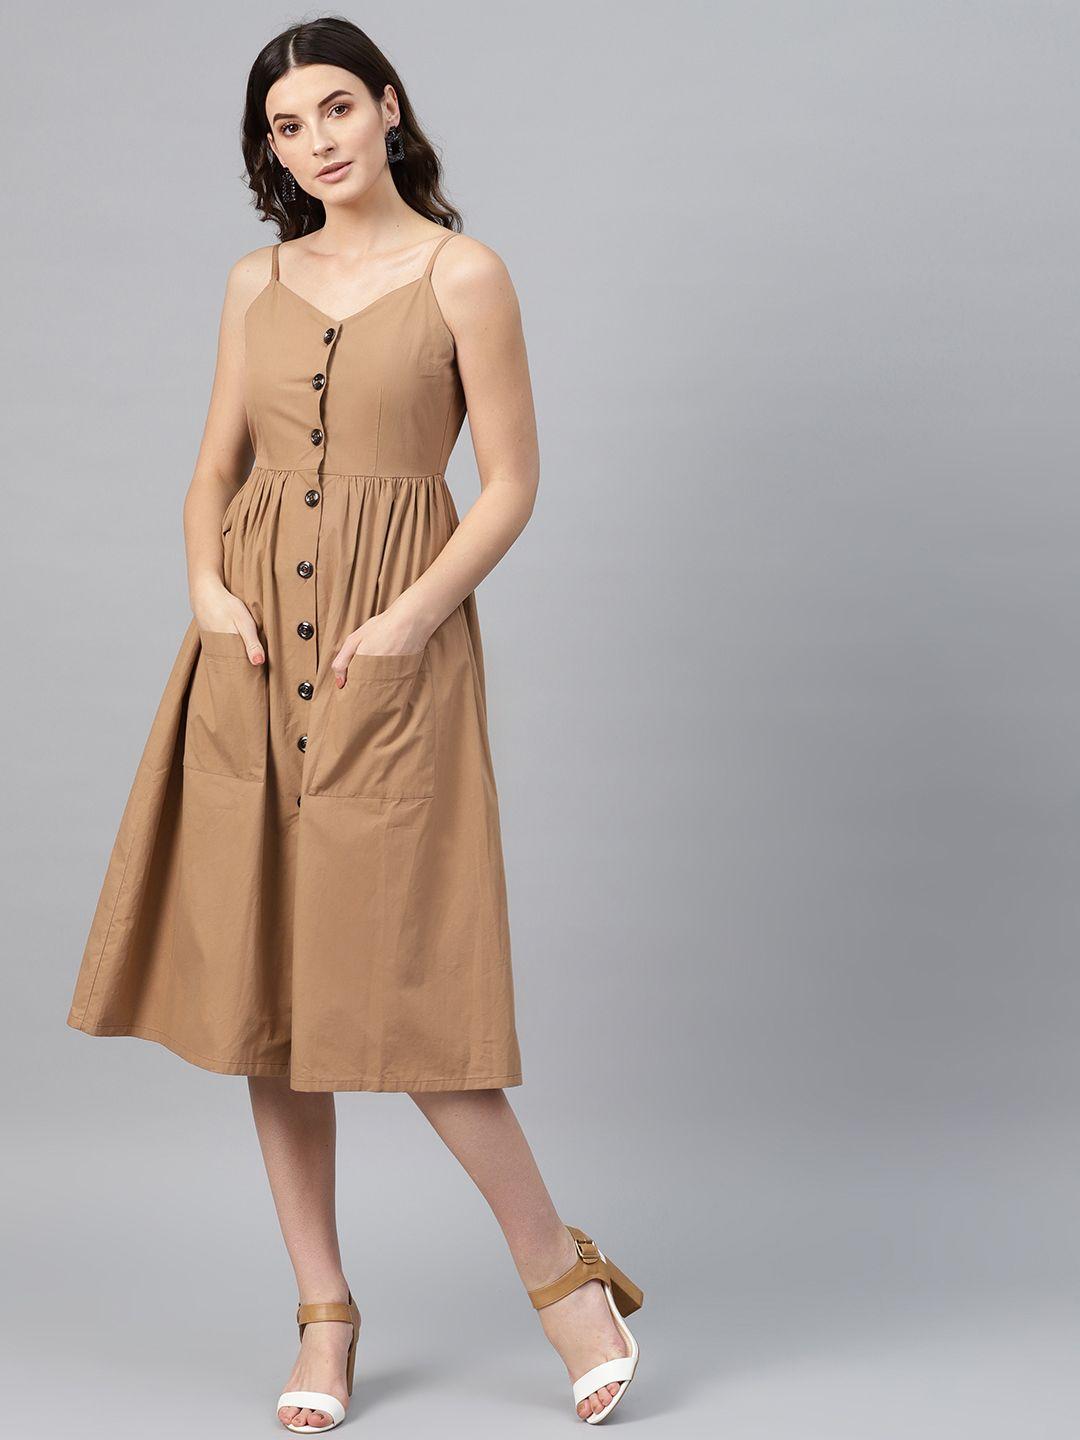 sassafras brown empire flared dress